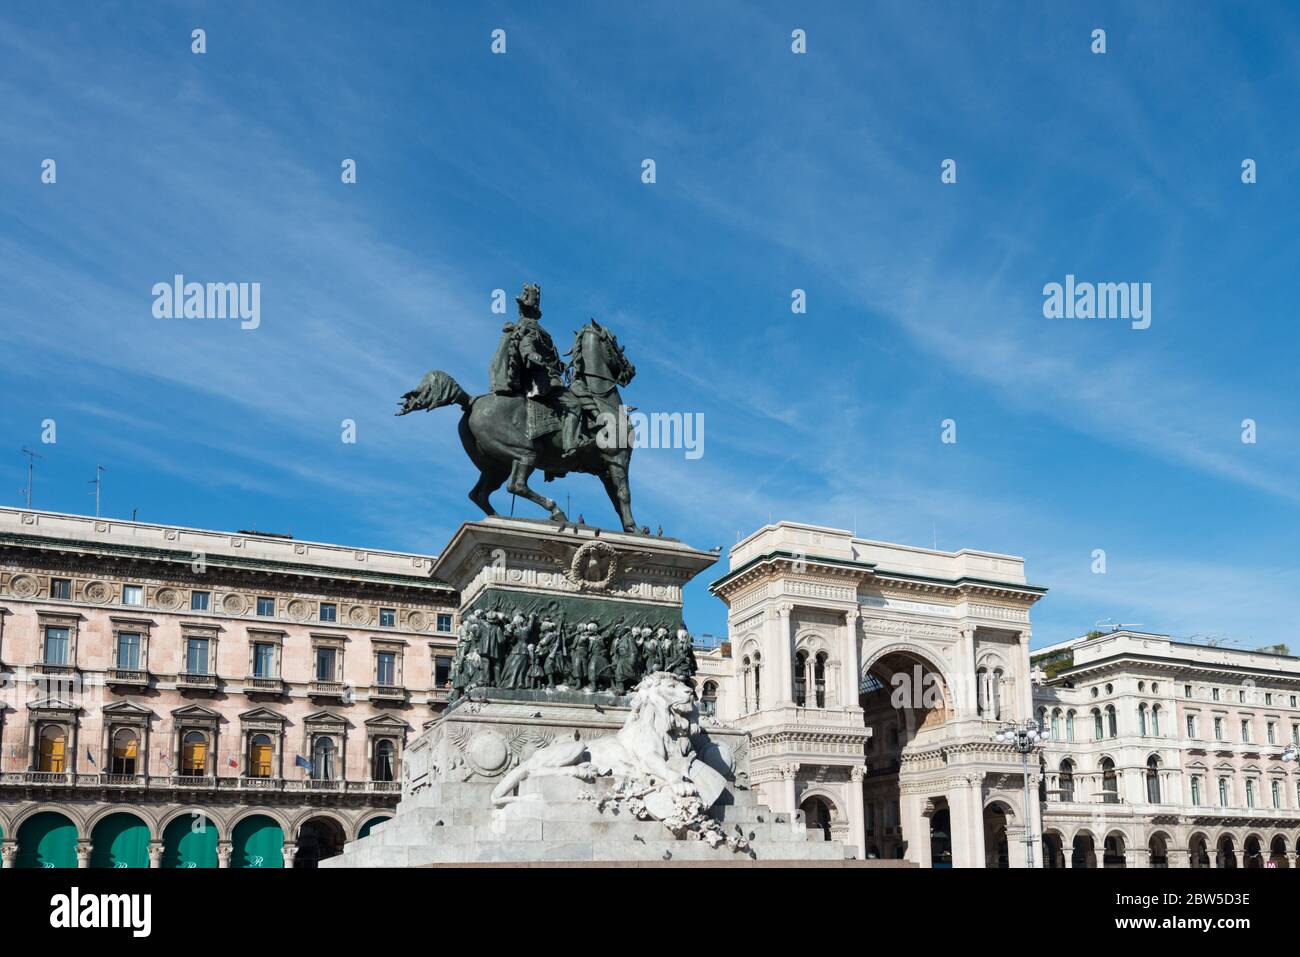 MILANO, ITALIA - 16 MARZO 2018: Immagine orizzontale della splendida statua e Galleria Vittorio Emanuele II, una visita turistica di Milano Foto Stock